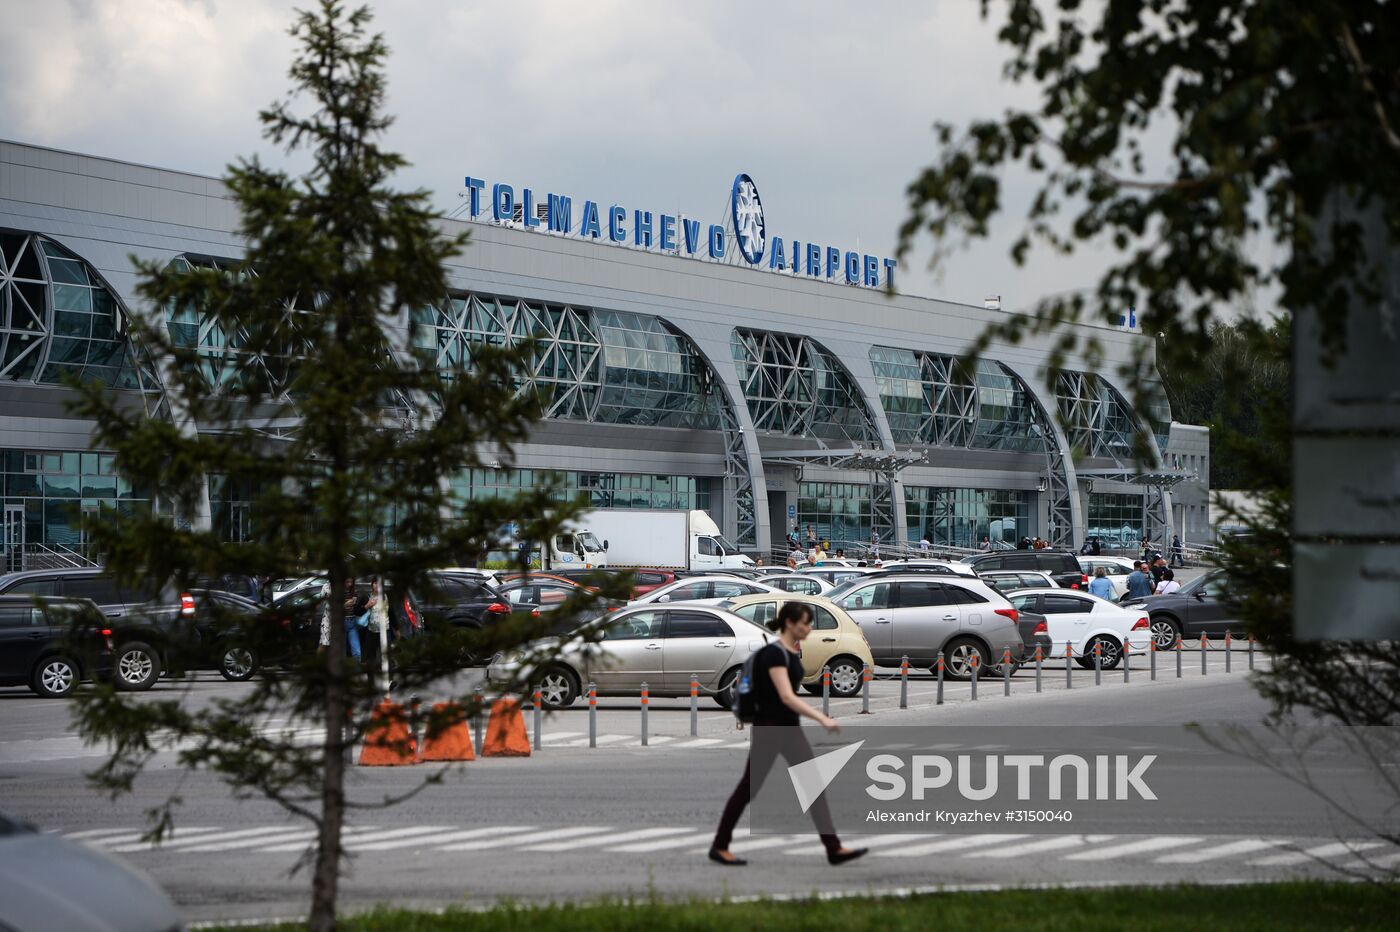 Tolmachevo Airport in Novosibirsk